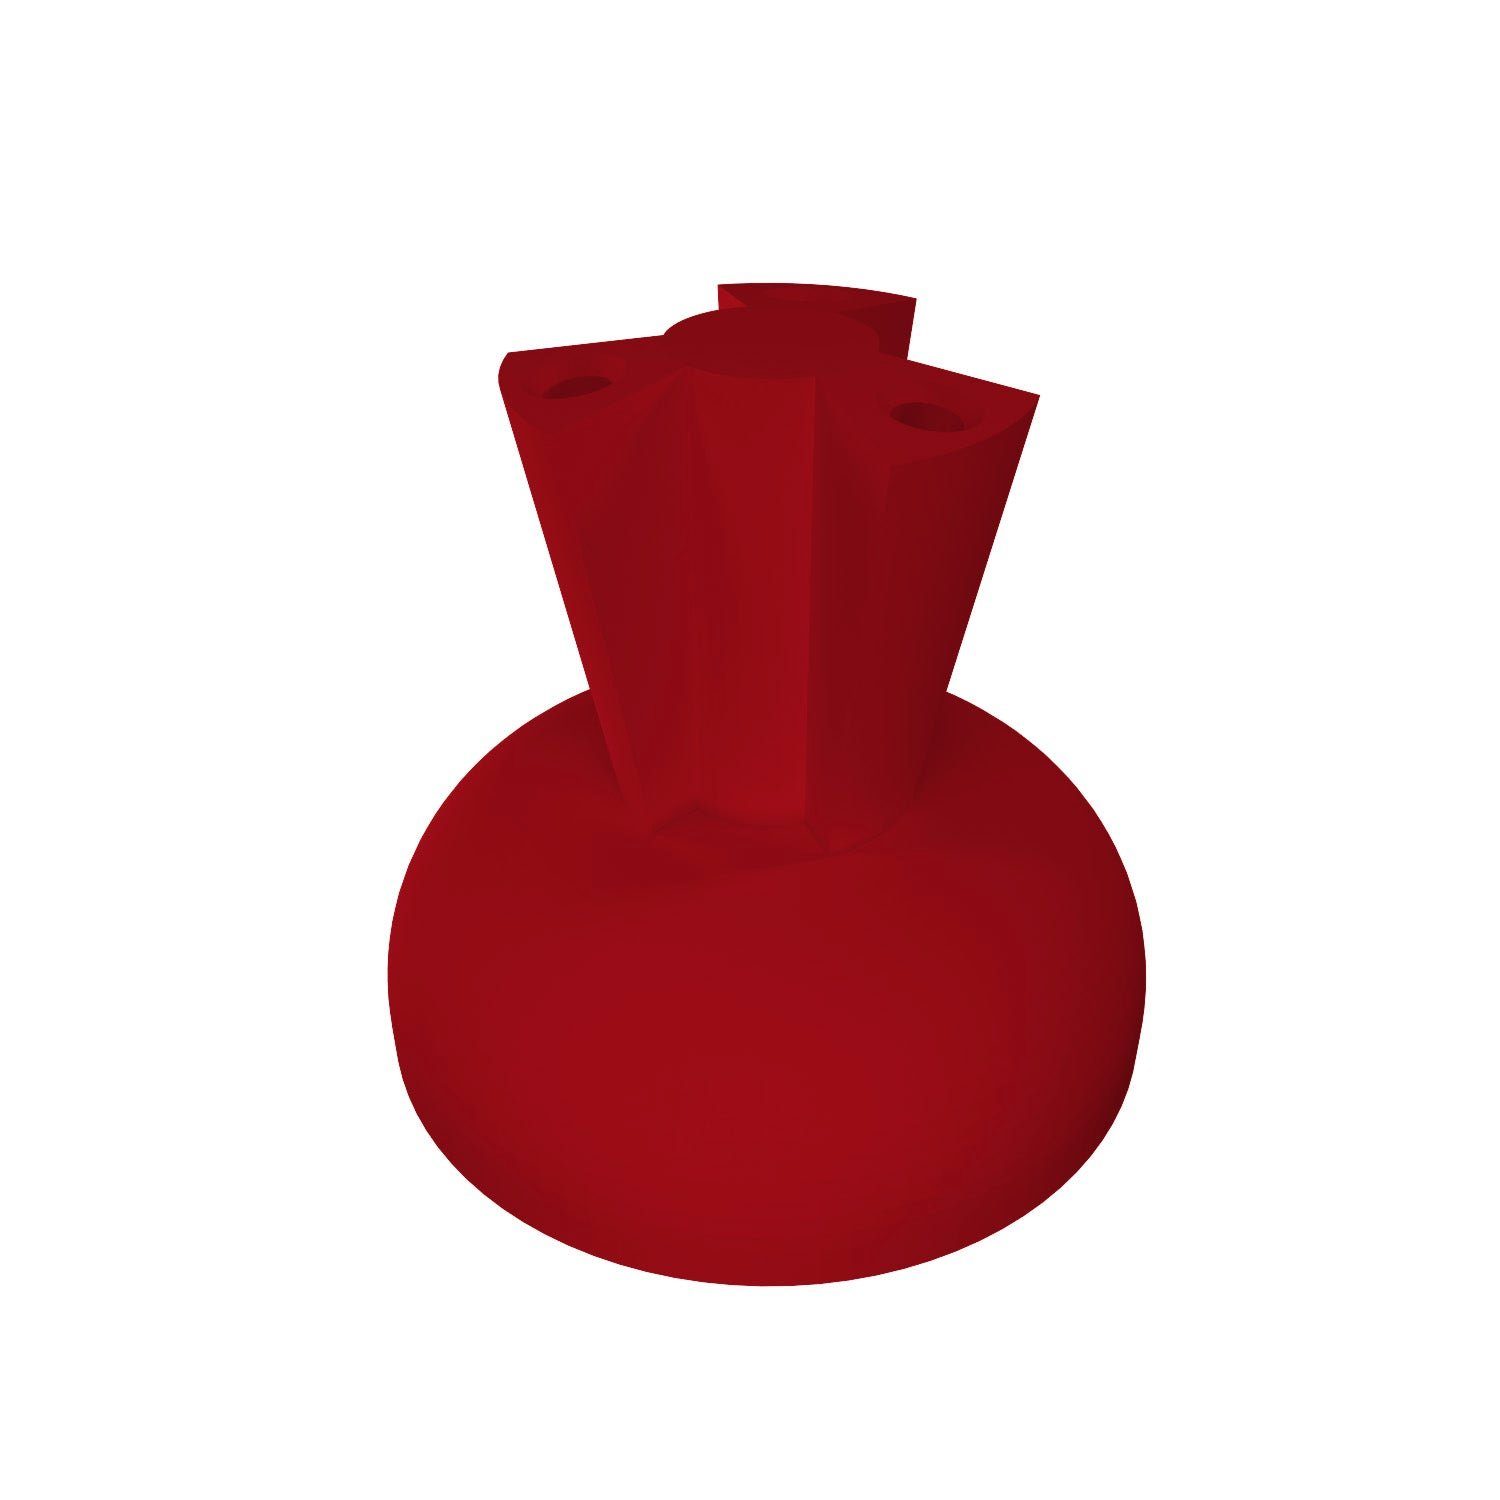 Zubehö halter für Dartpfeile kompatibel Stand Halterung Dartpfeil fossi3D Display Rack Rot